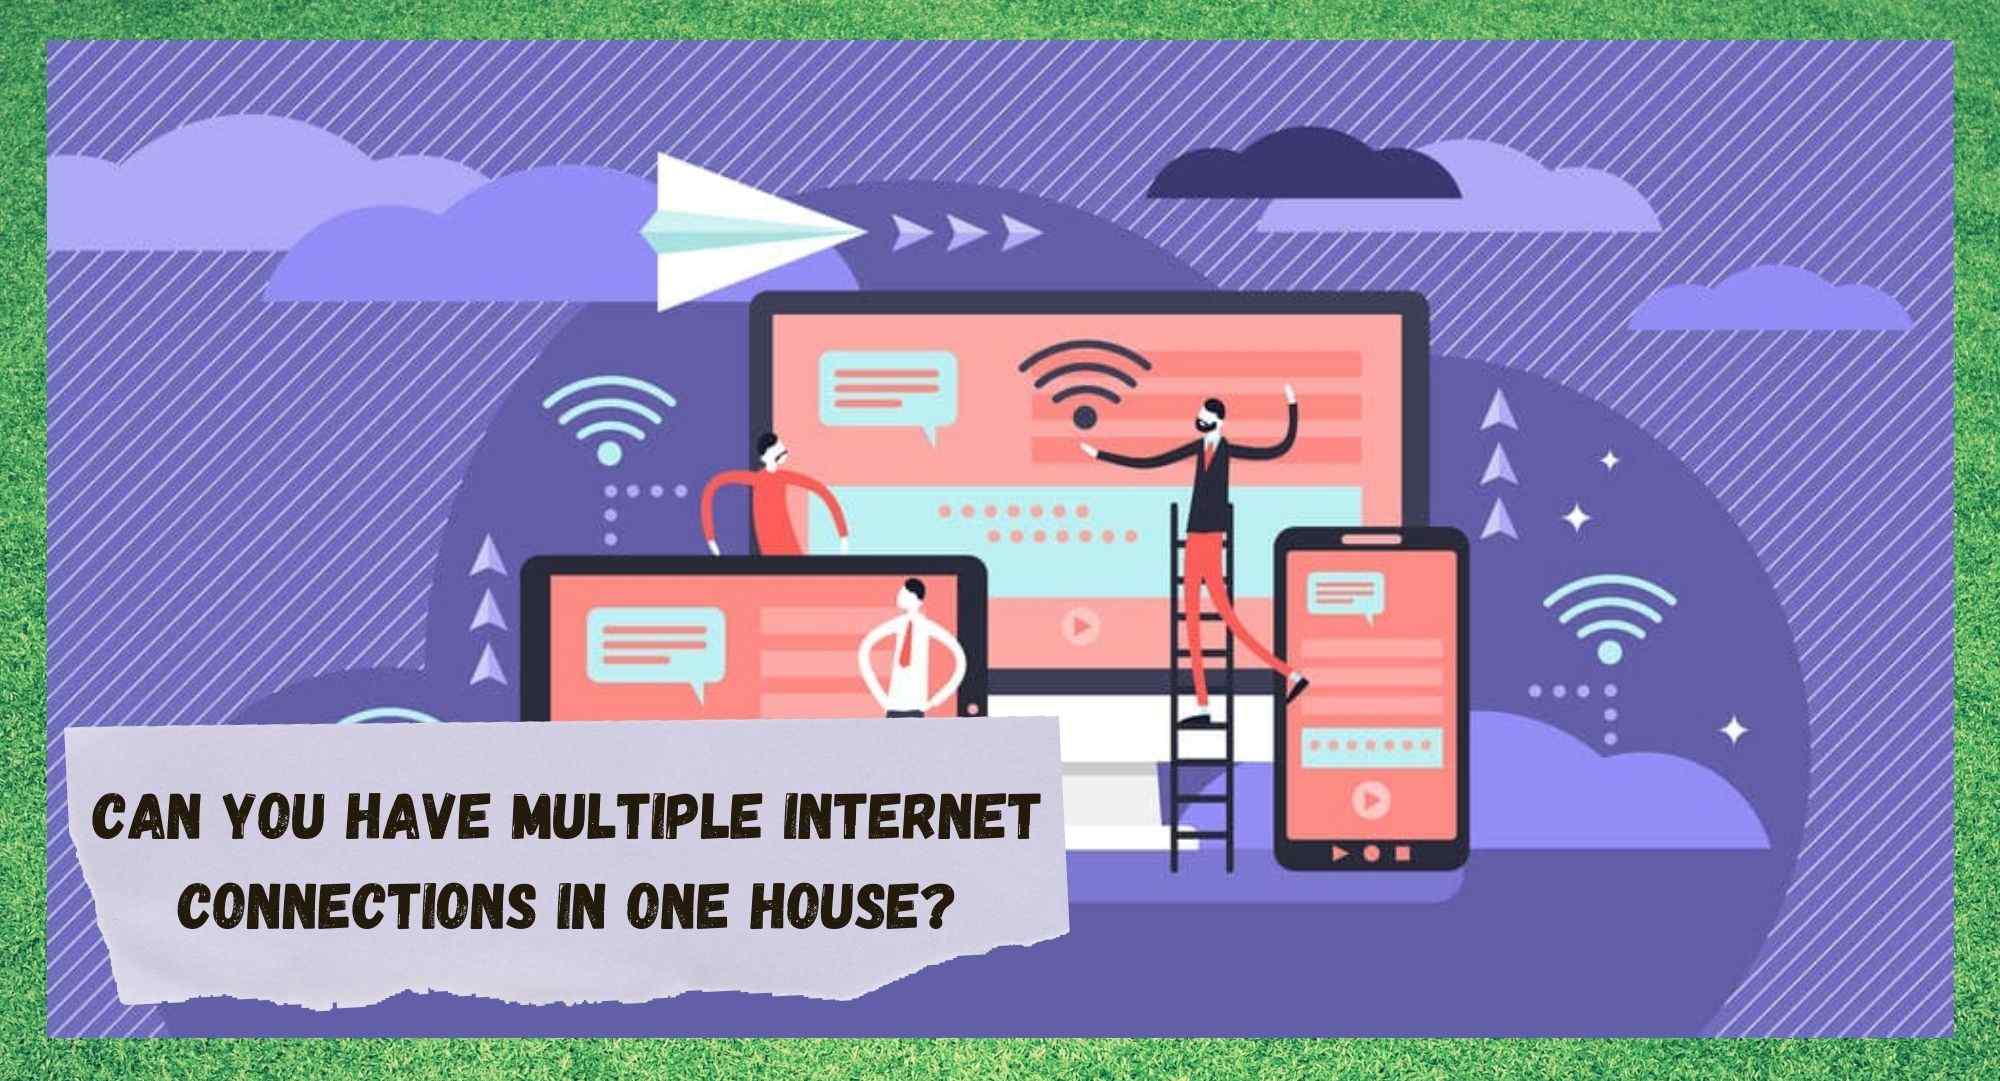 Kunt u meerdere internetverbindingen in één huis hebben?